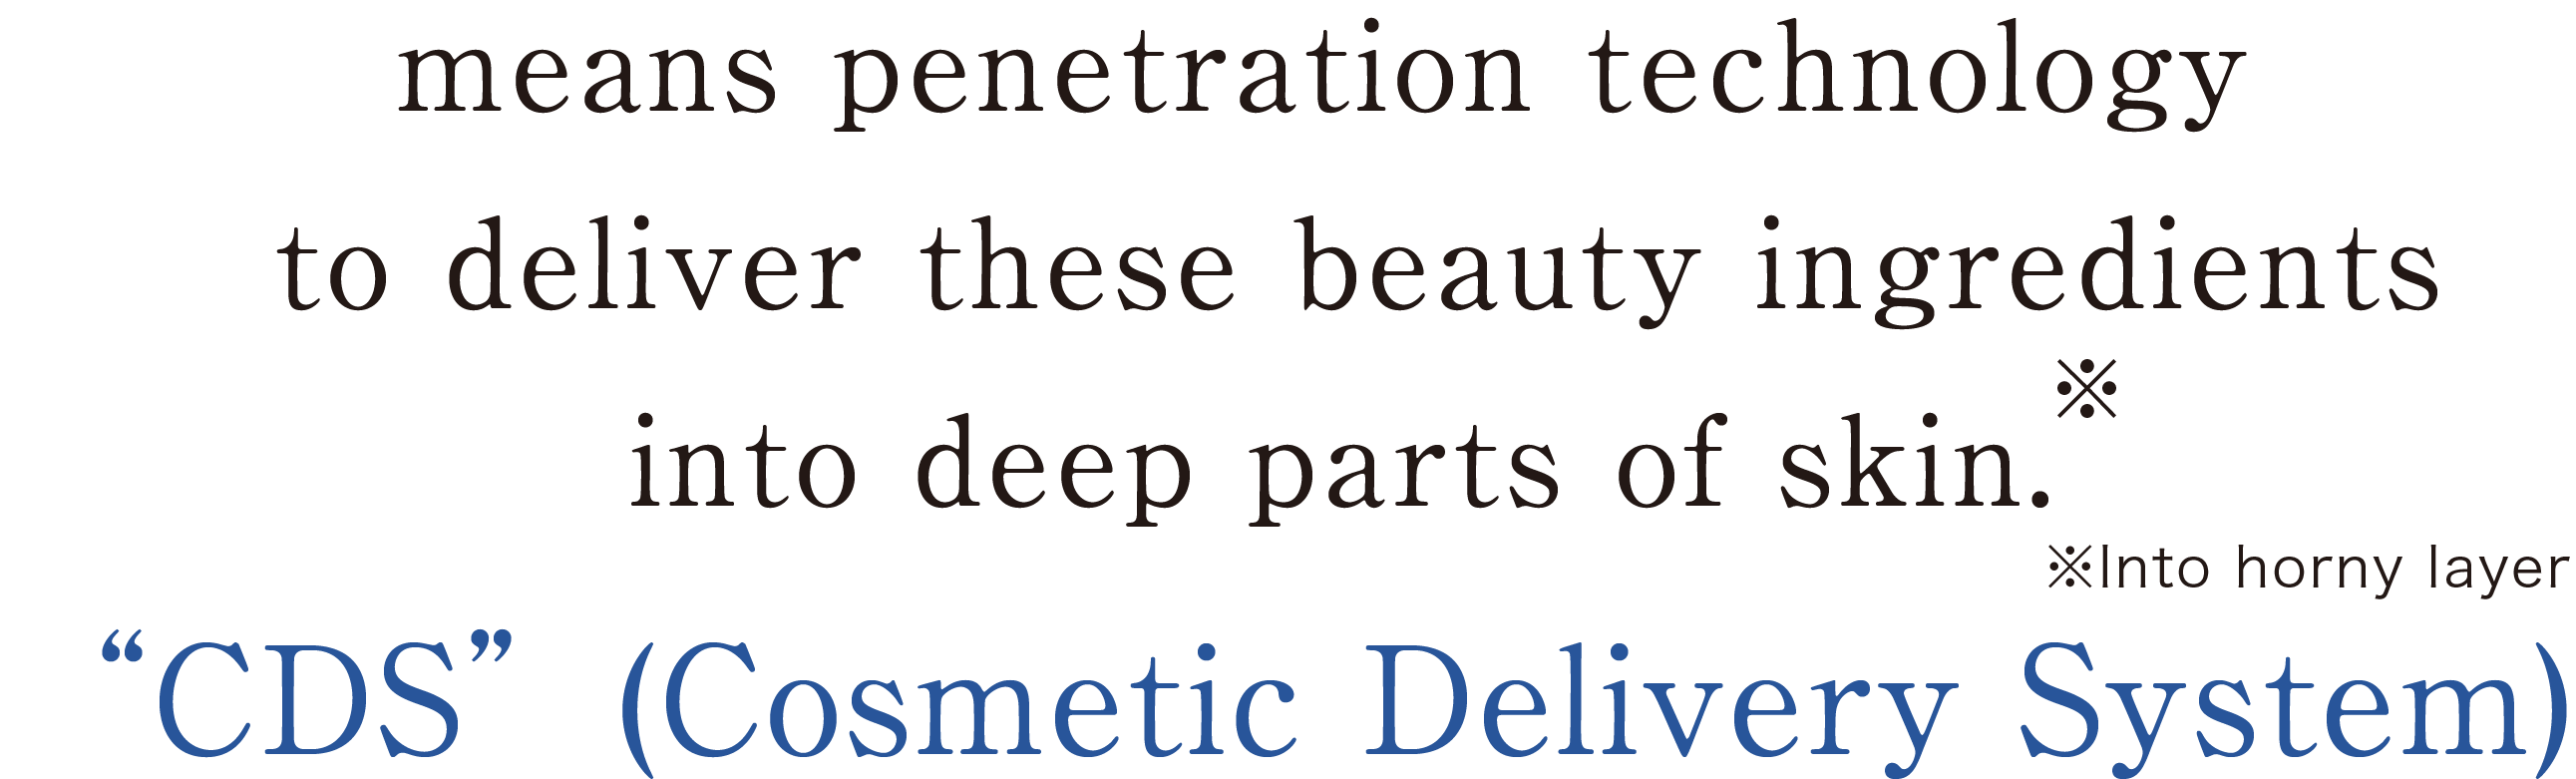 厳選美容成分を肌の奥※に届ける浸透技術「CDS」コスメティックデリバリーシステム